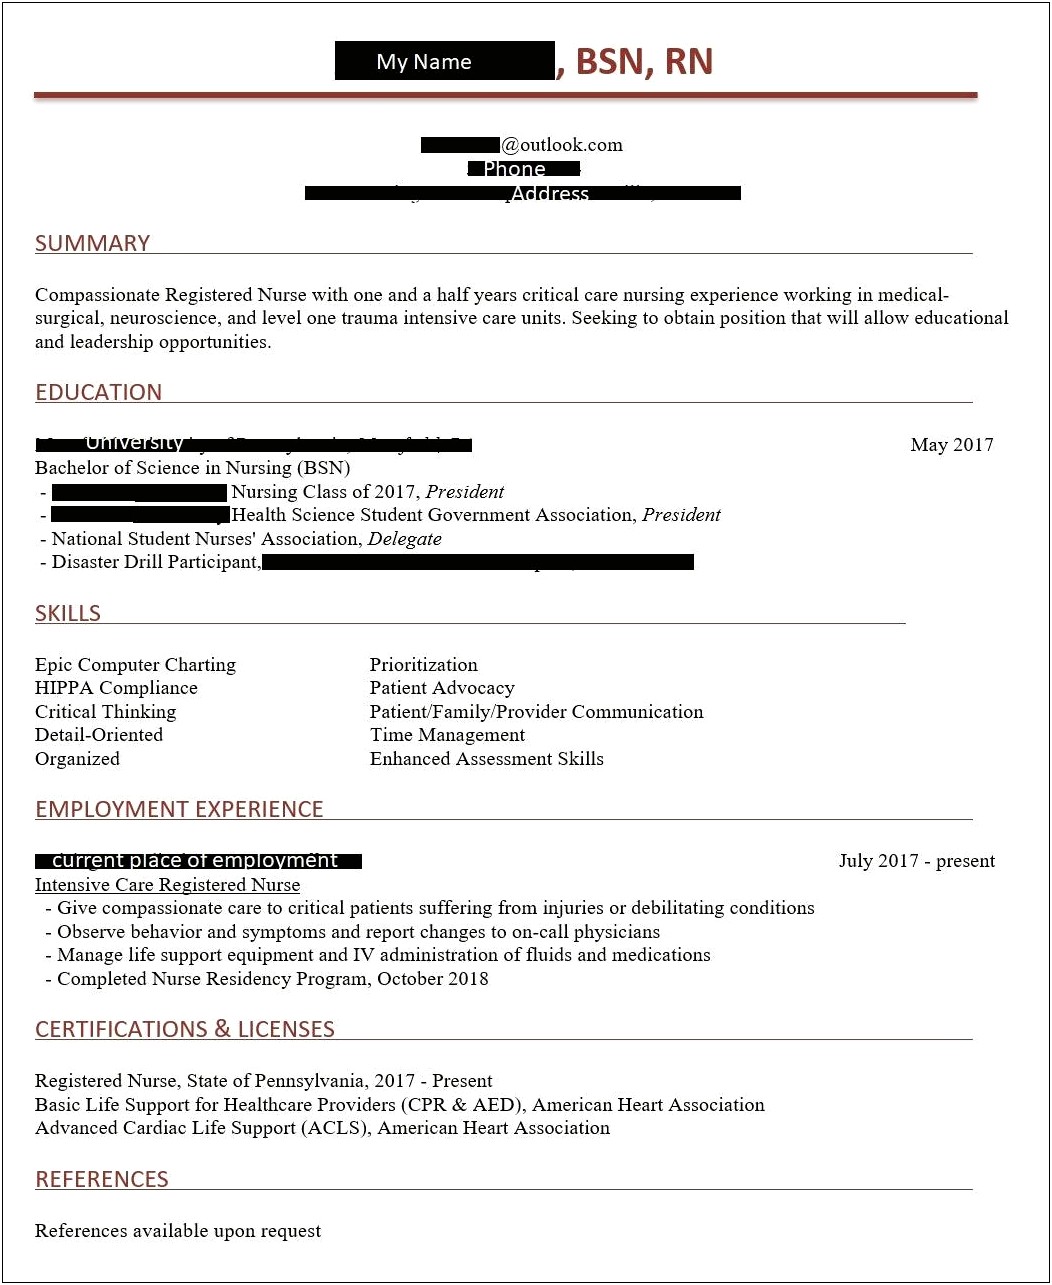 Graduate Nurse Resume With No Experience